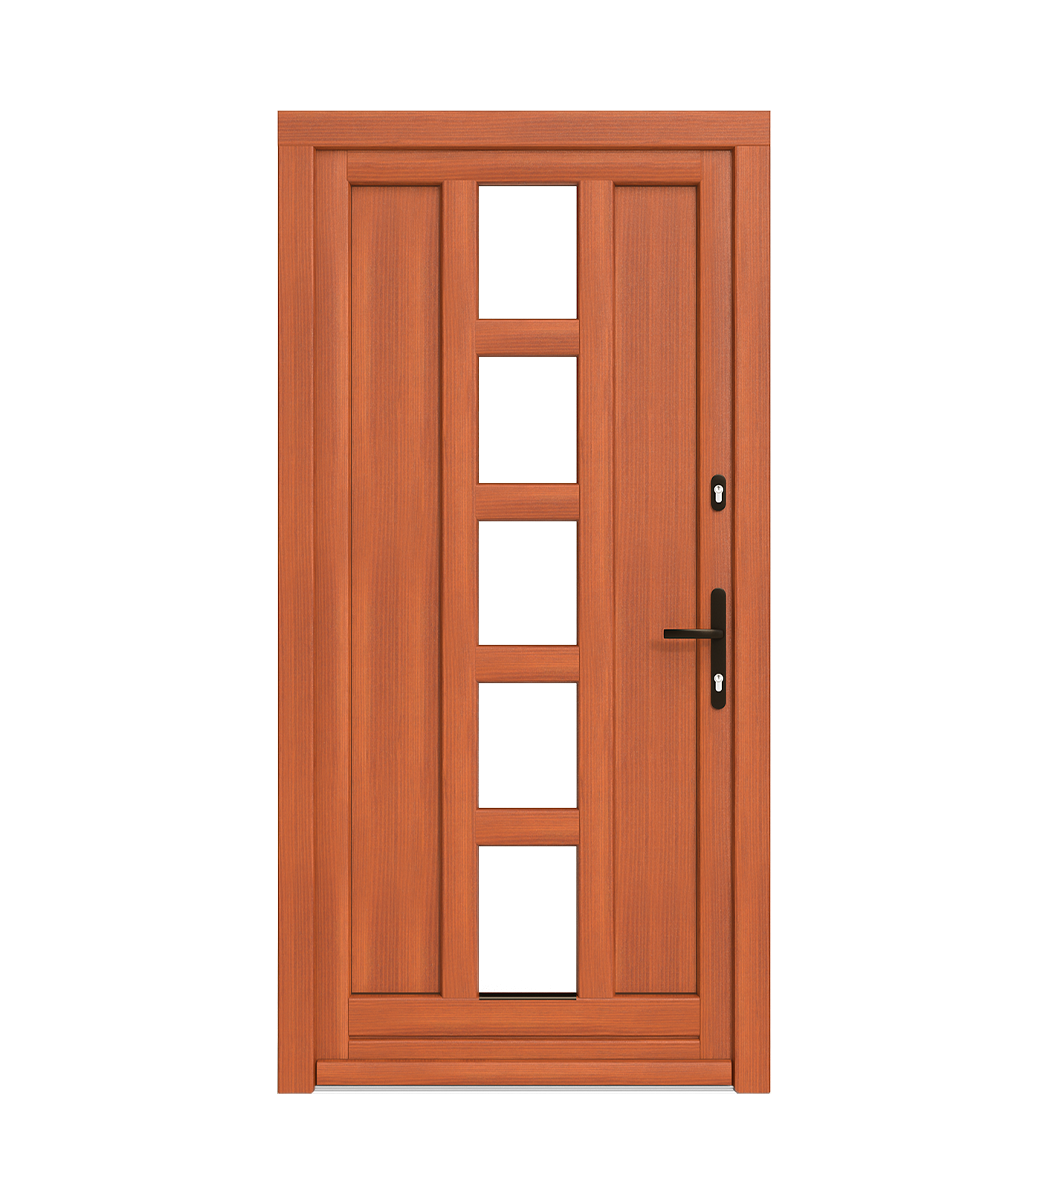 Výstuhy v drevených dverách